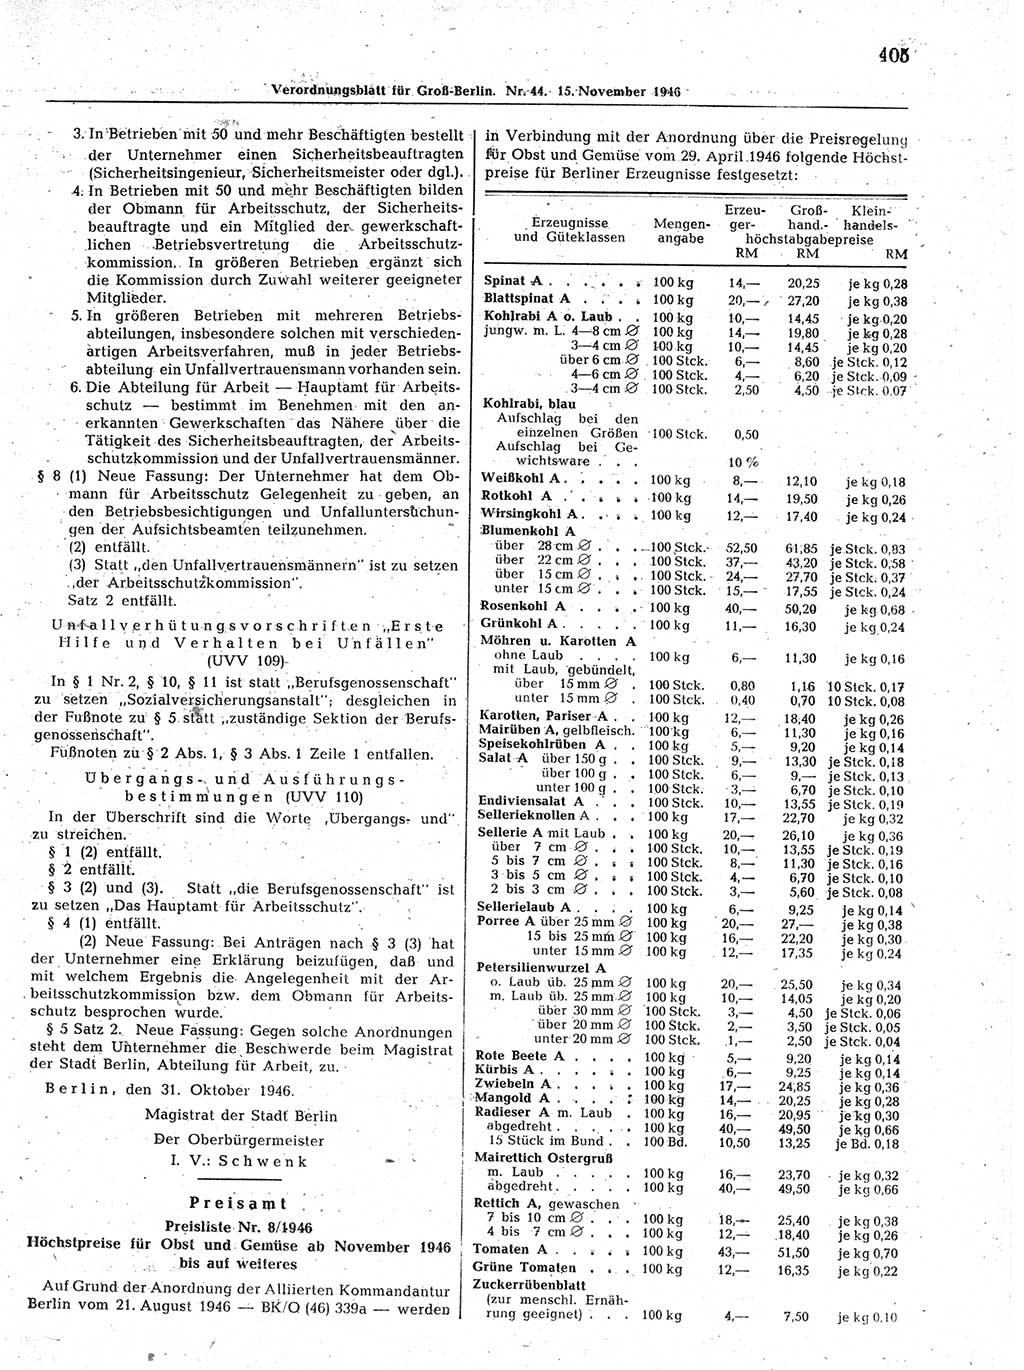 Verordnungsblatt (VOBl.) der Stadt Berlin, für Groß-Berlin 1946, Seite 405 (VOBl. Bln. 1946, S. 405)